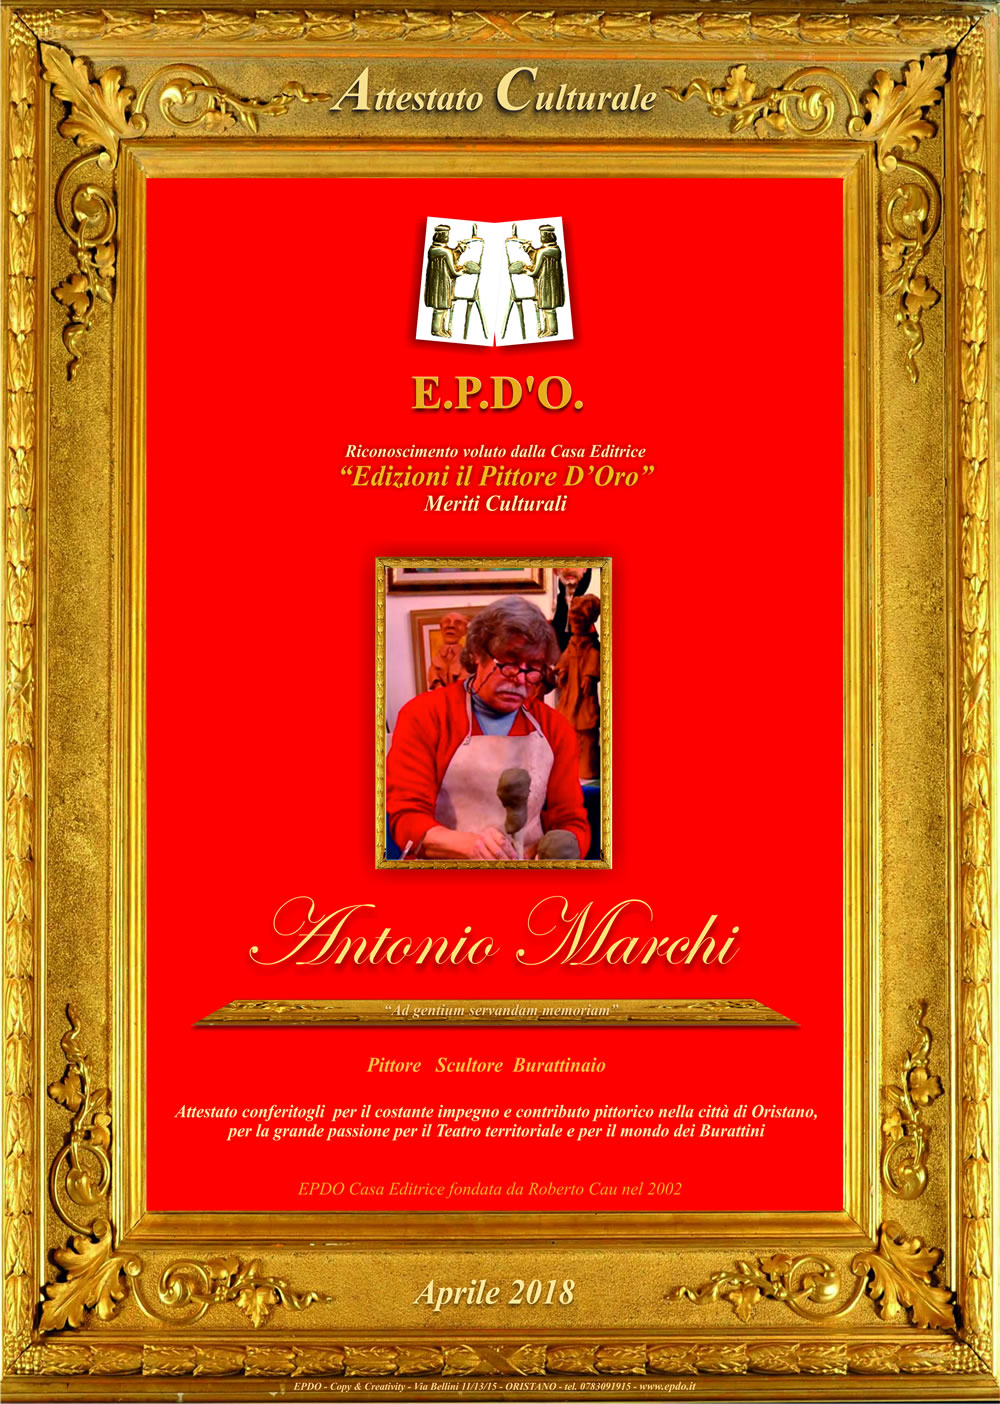 EPDO - Attestato Culturale Antonio Marchi